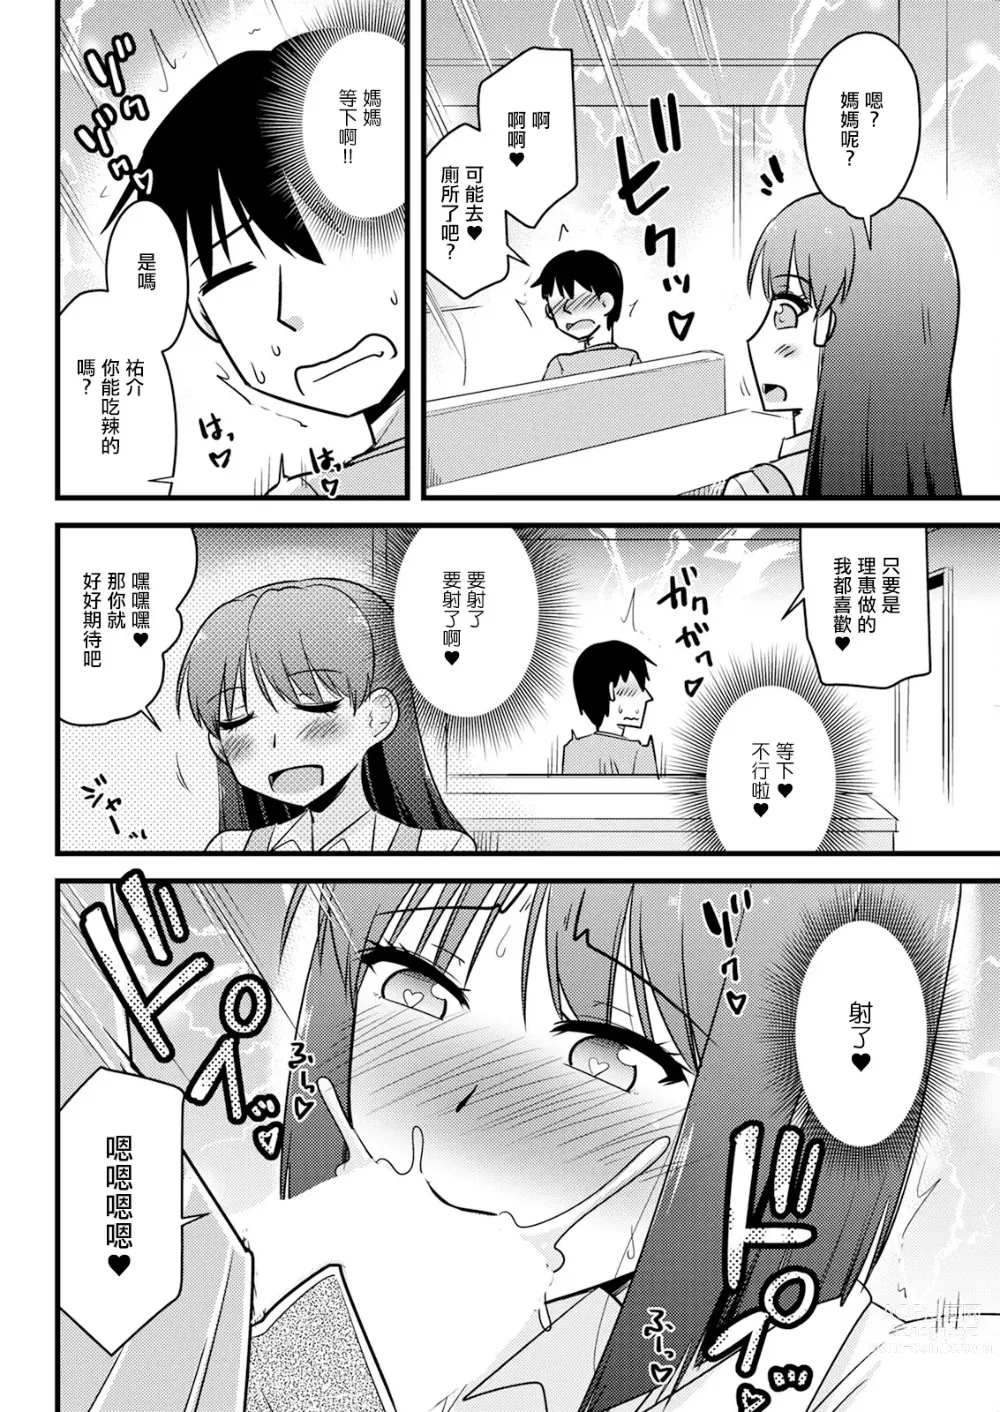 Page 6 of manga Kanojo no Haha no Kousai Test